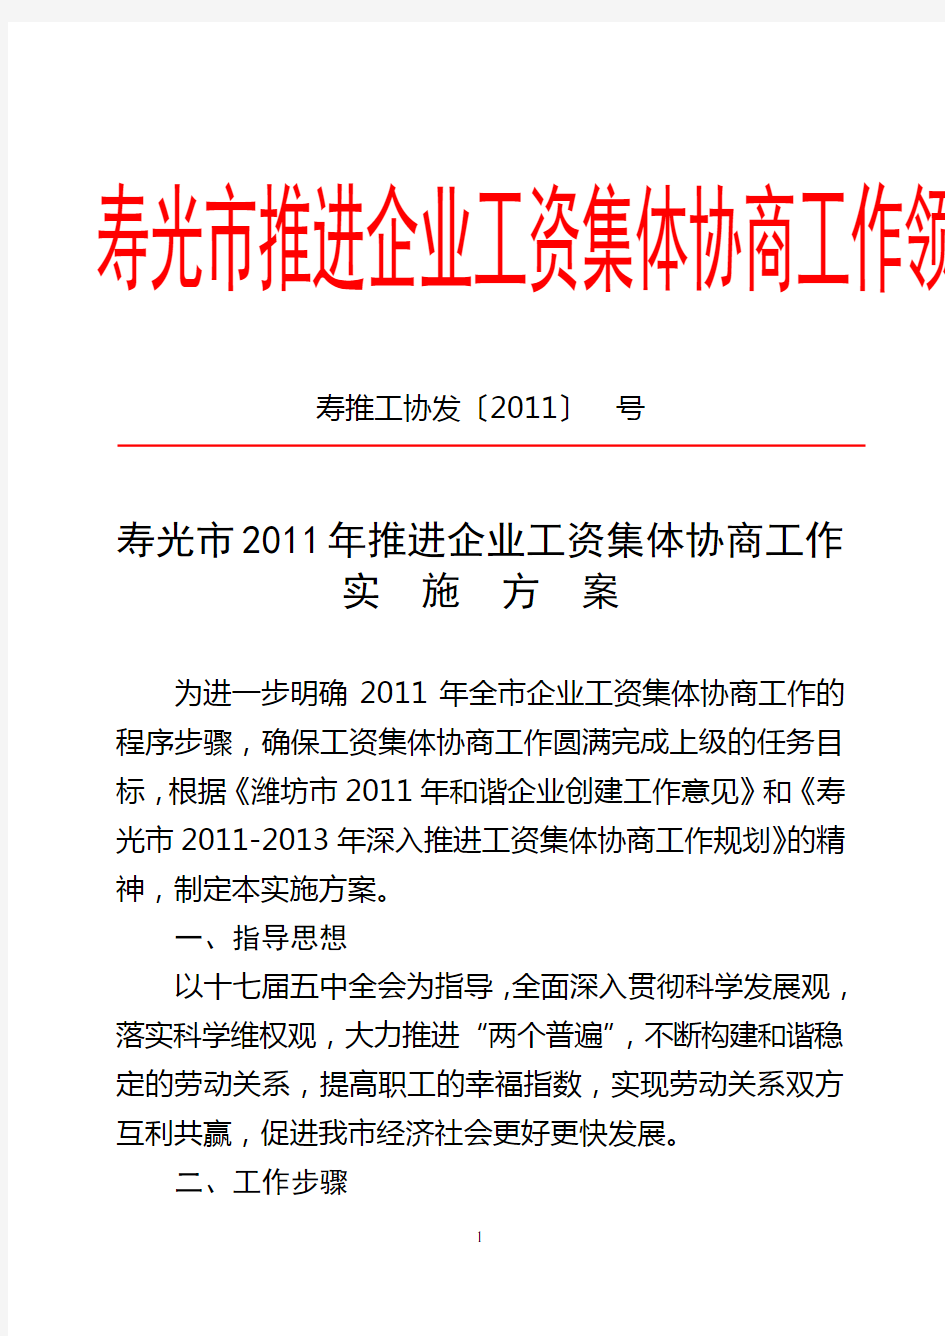 寿光市2011年推进企业工资集体协商工作实施方案(10.18)